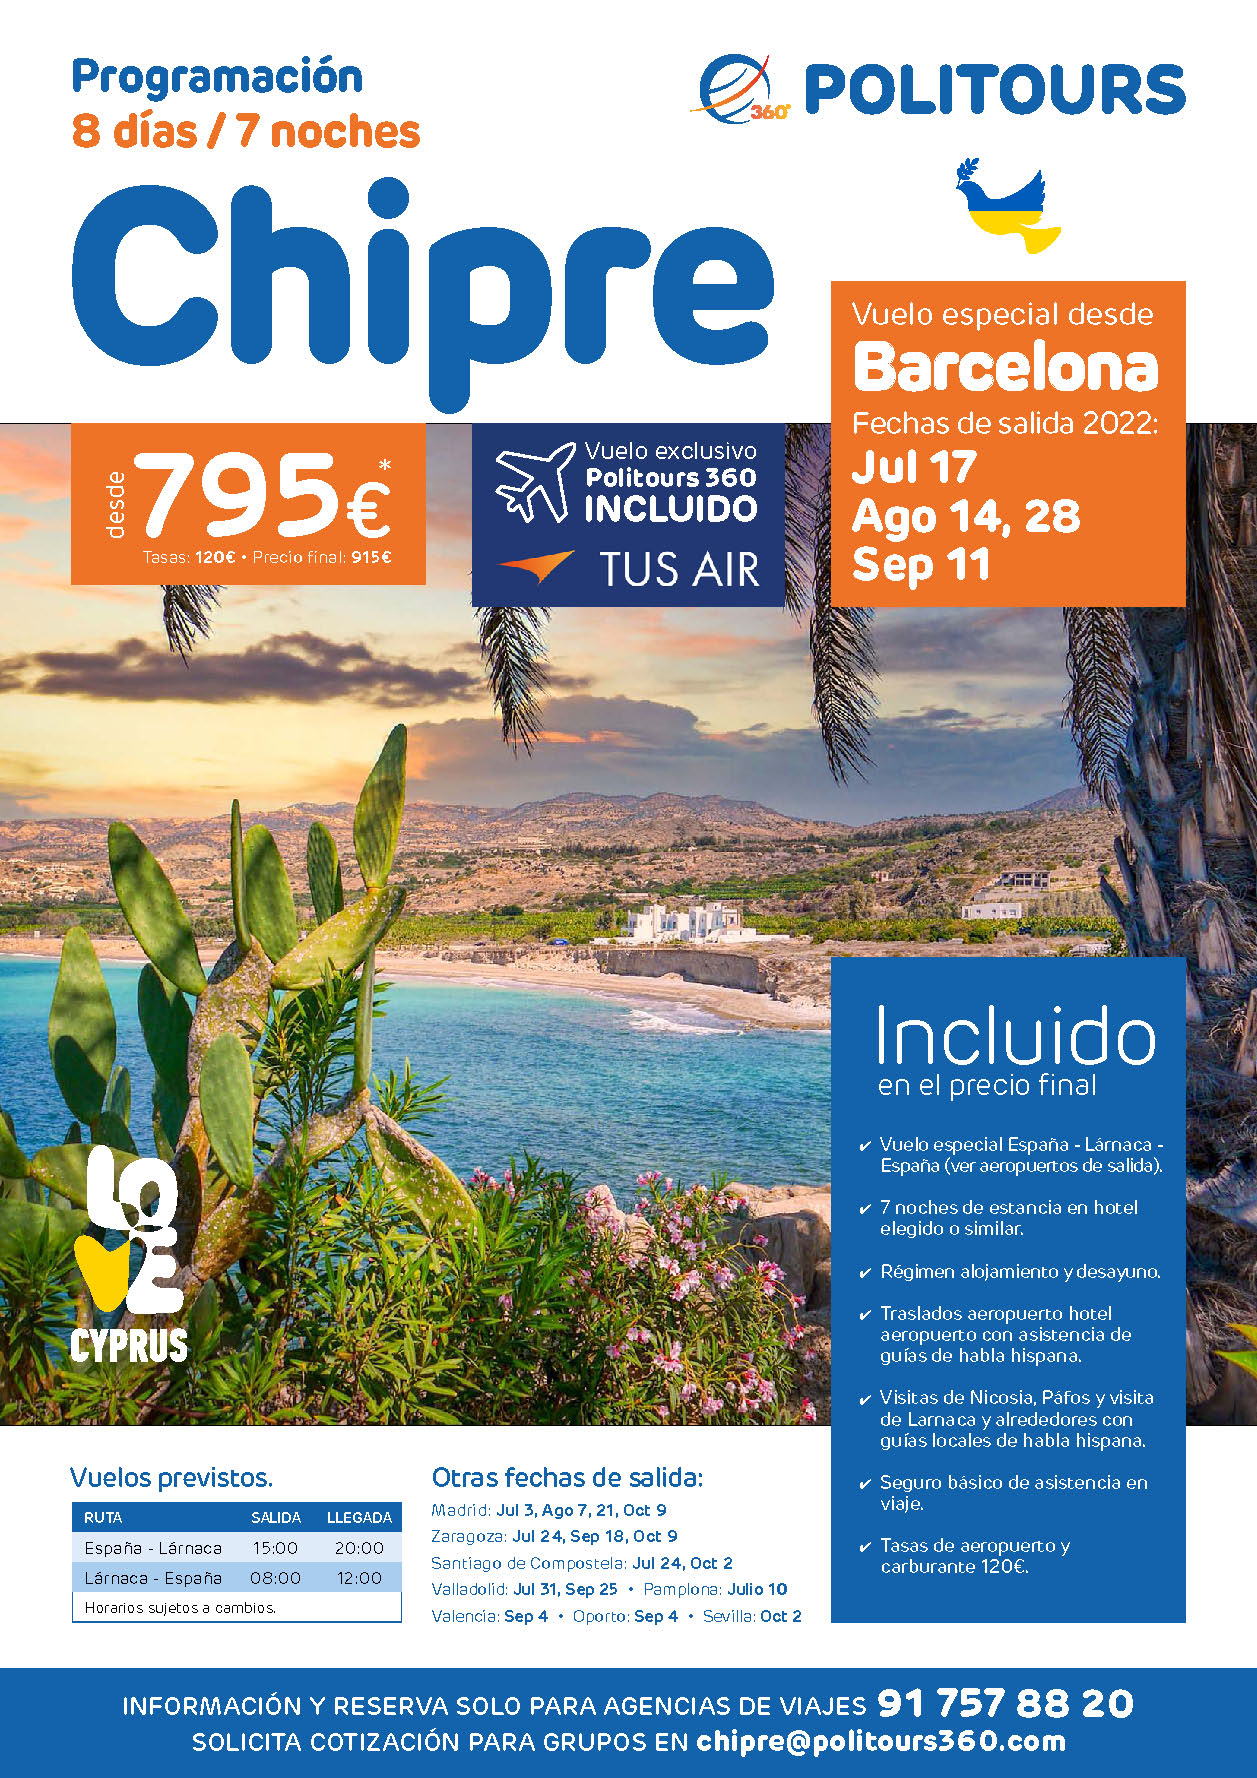 Oferta Politours Circuito por Chipre 8 dias salidas Julio Agosto y Septiembre 2022 vuelo especial directo desde Barcelona